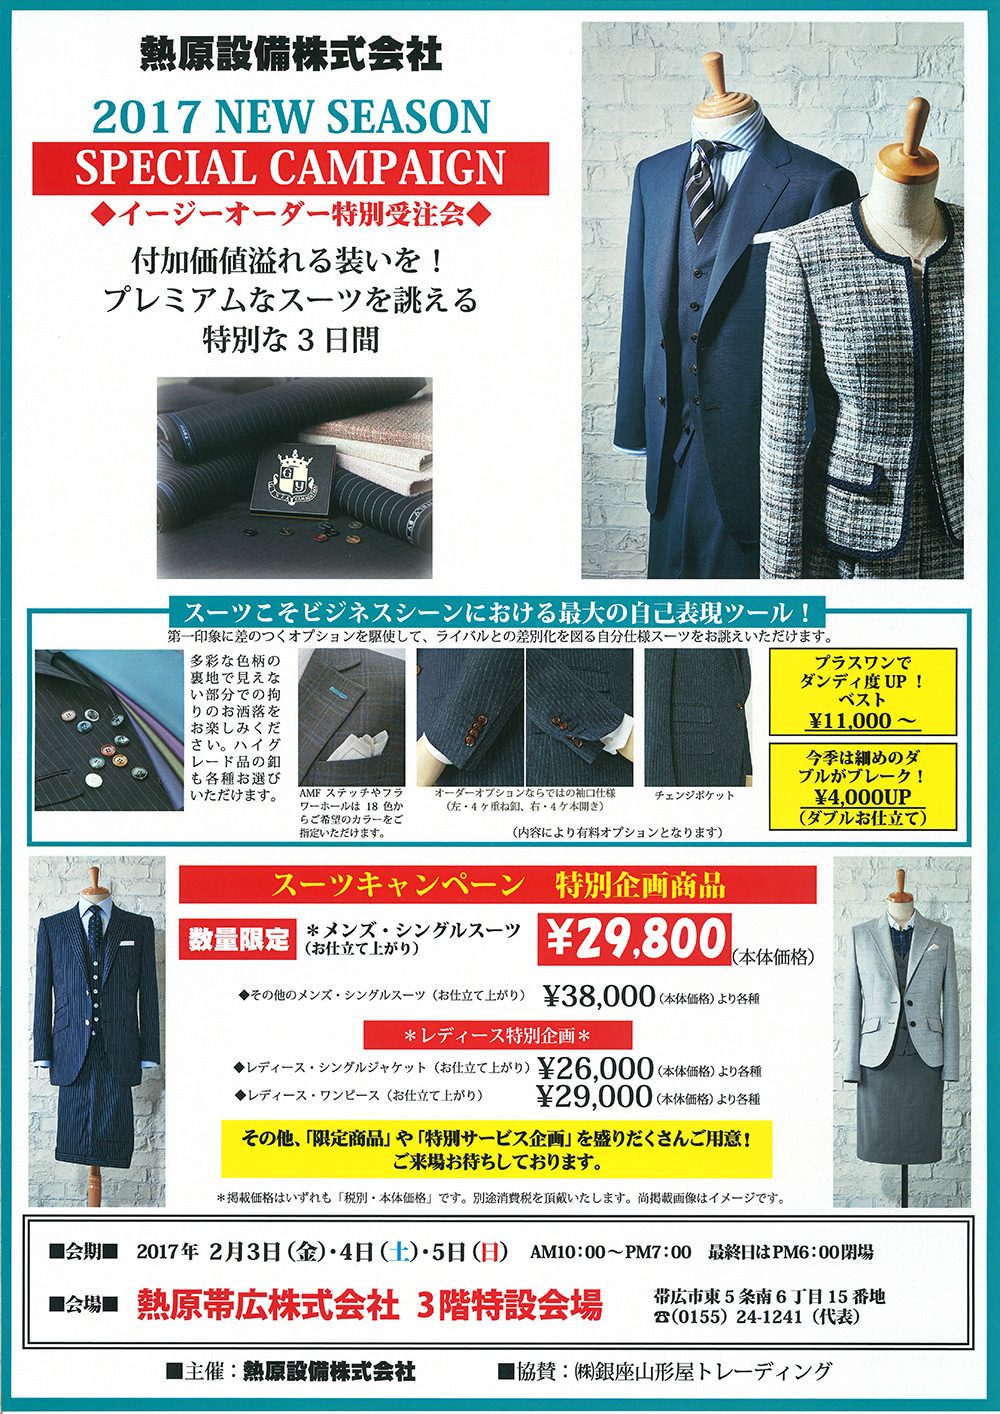 http://www.netsugen.co.jp/setsubi/information/images/170118ordersuit_campaign.jpg